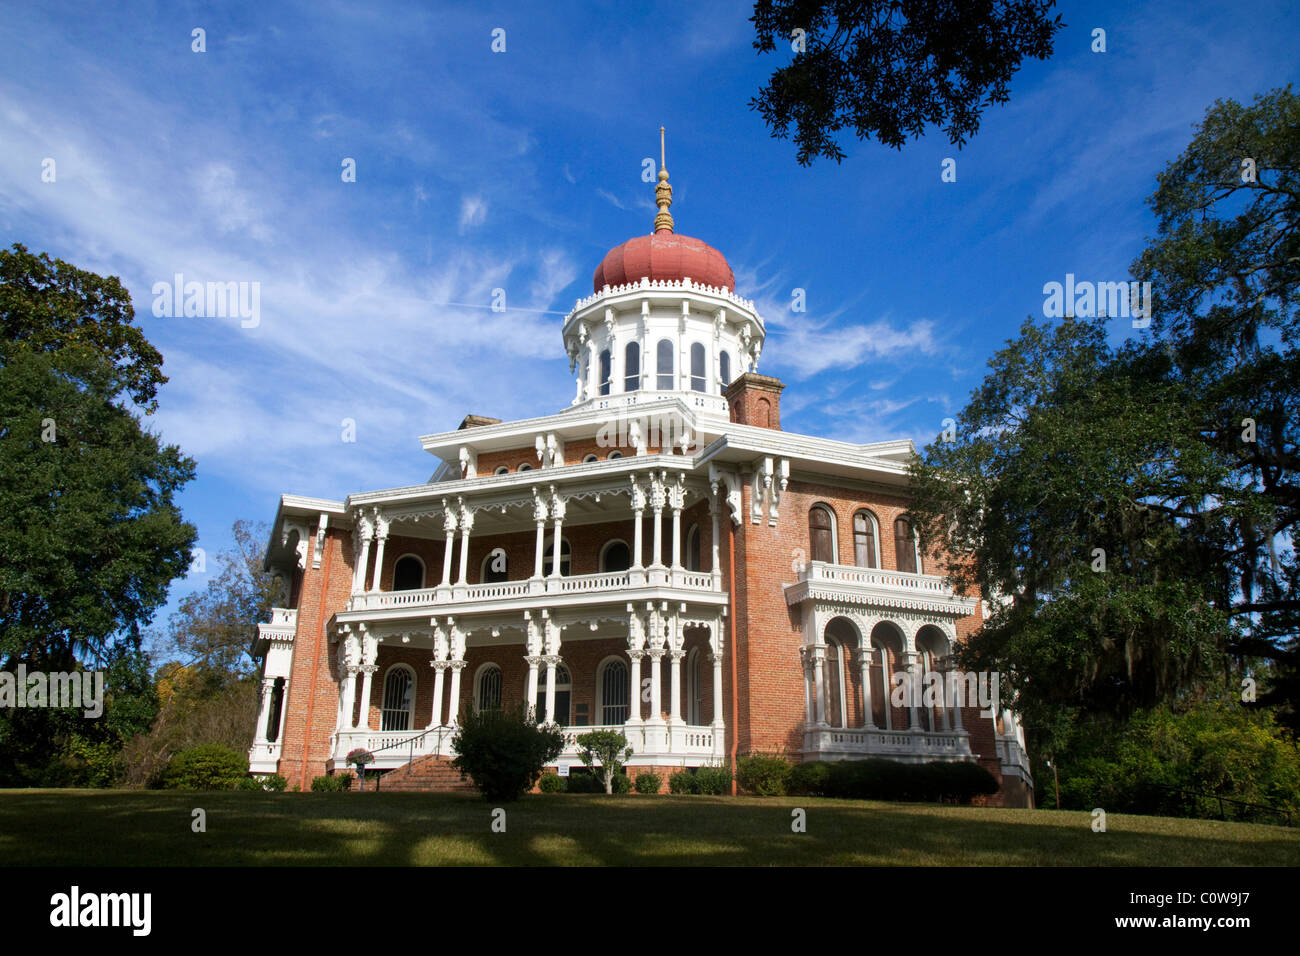 Historique de Longwood antebellum mansion octogonal situé dans la région de Natchez, Mississippi, USA. Banque D'Images